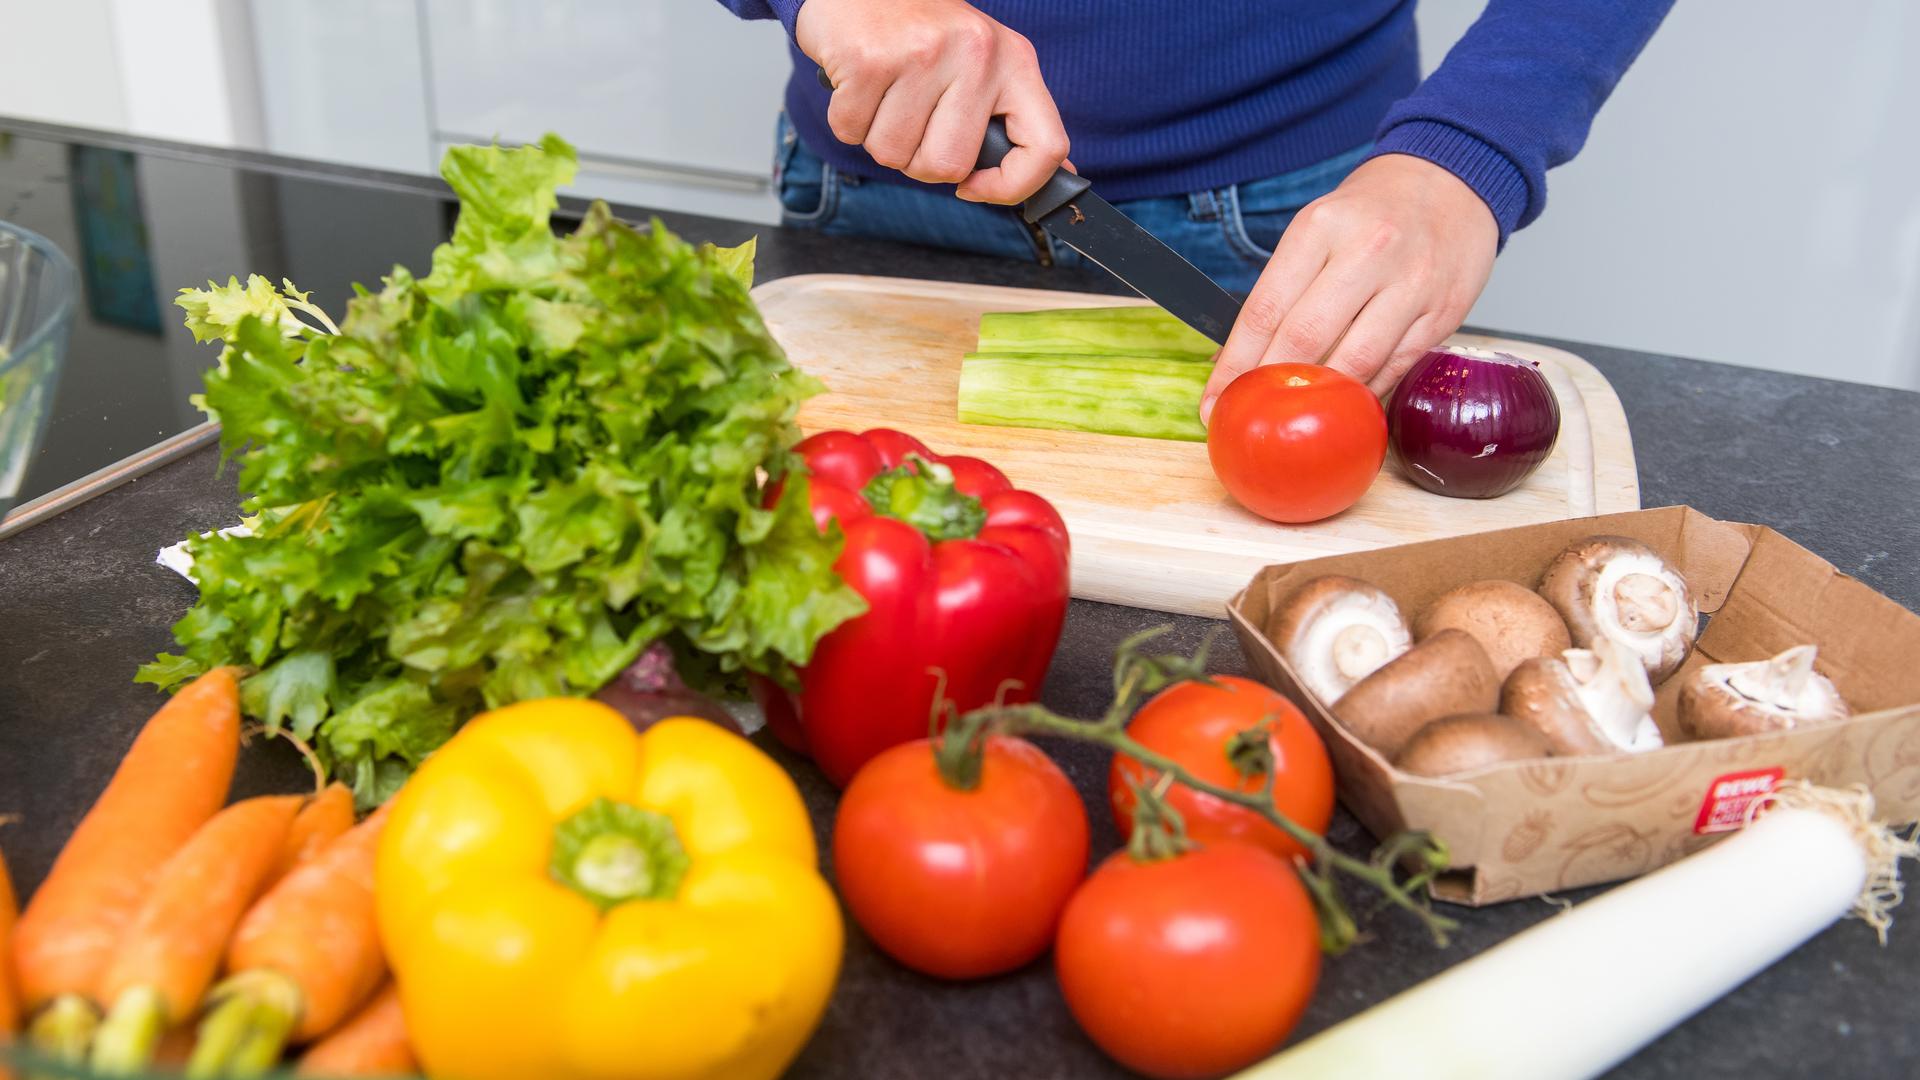 Zum Themendienst-Bericht vom 1. Oktober 2020: Bei Vegetariern kommt viel Gemüse auf den Tisch.